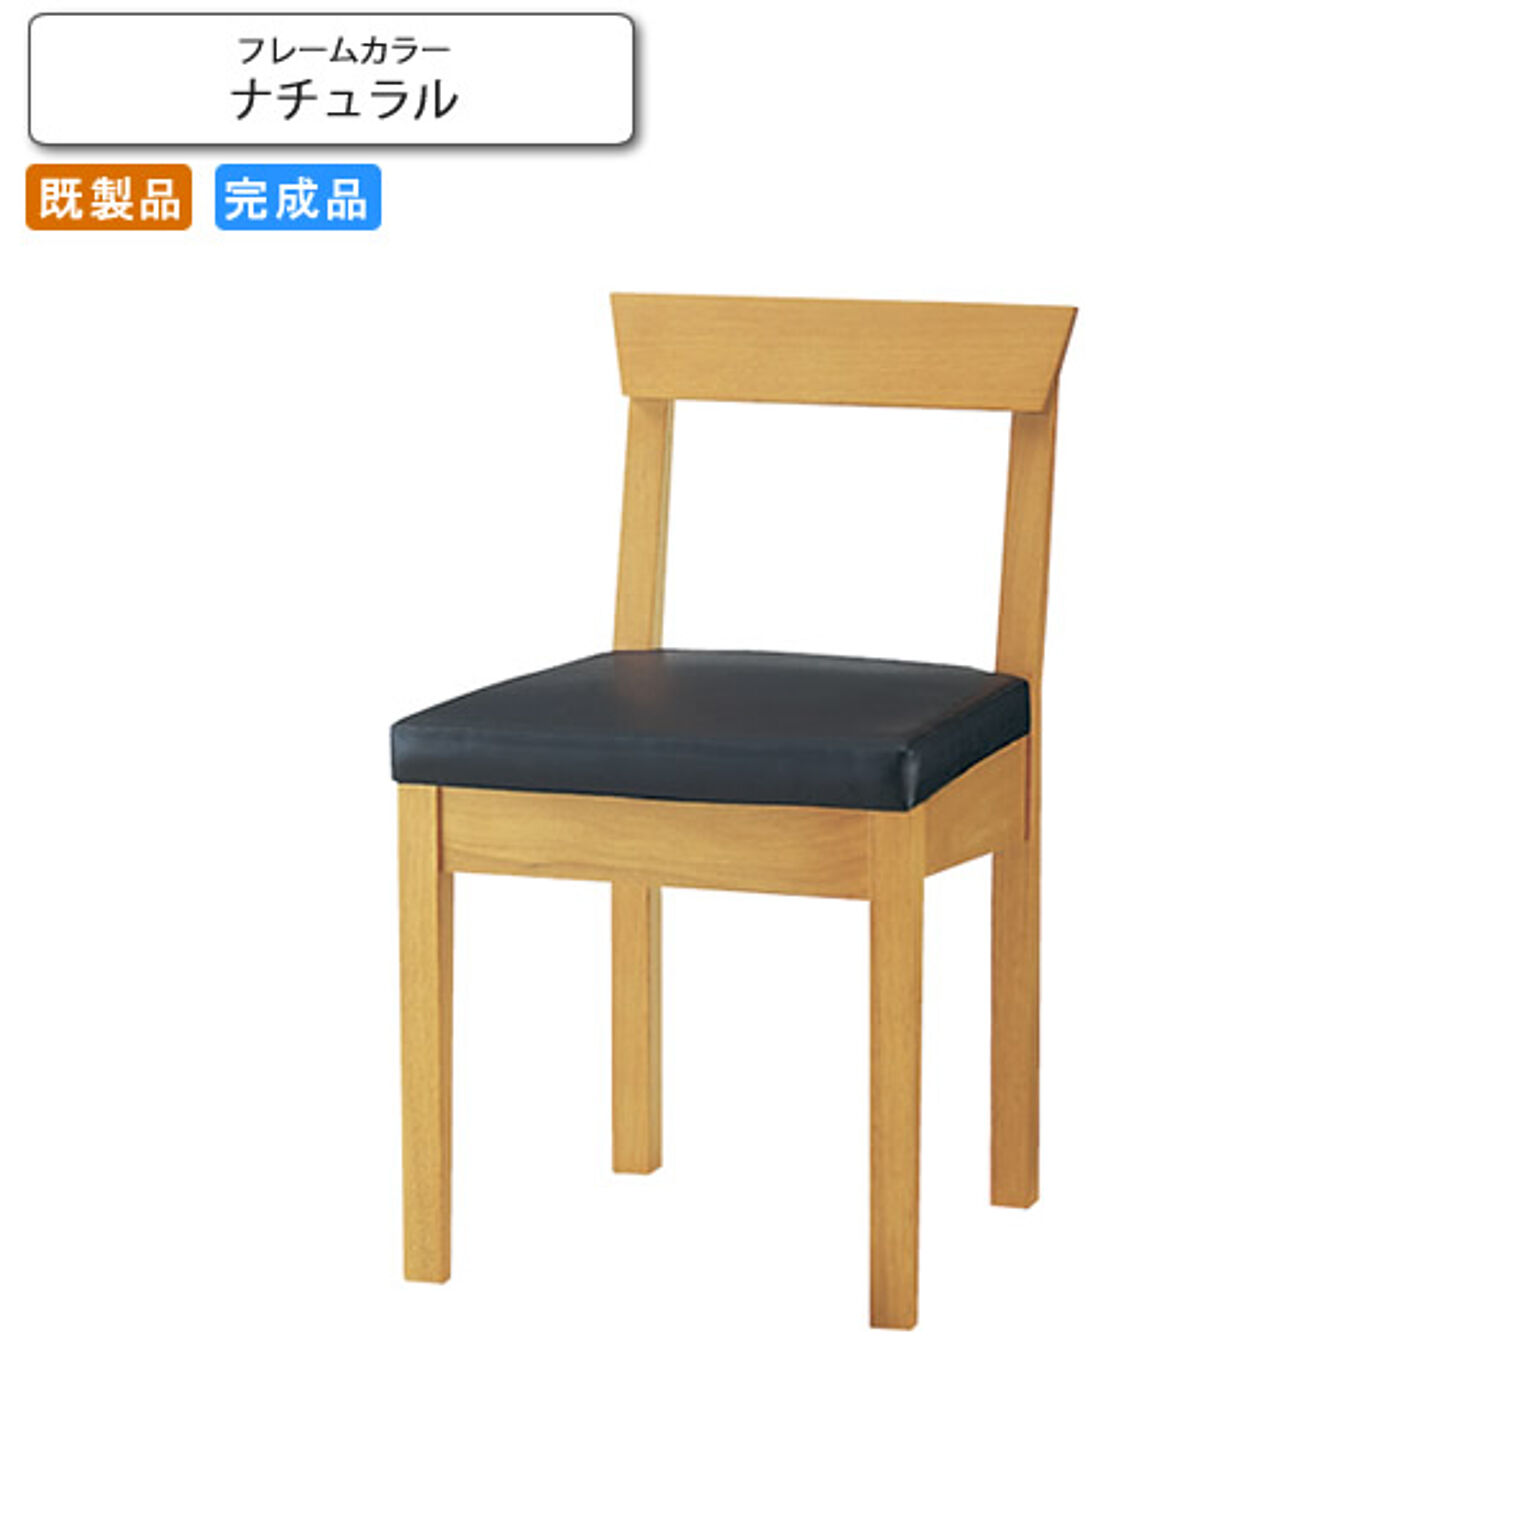 ダイニングチェアー 椅子 イス 相生 ナチュラル 業務用家具シリーズ JAPANESE（ジャパニーズ）  店舗 施設 コントラクト